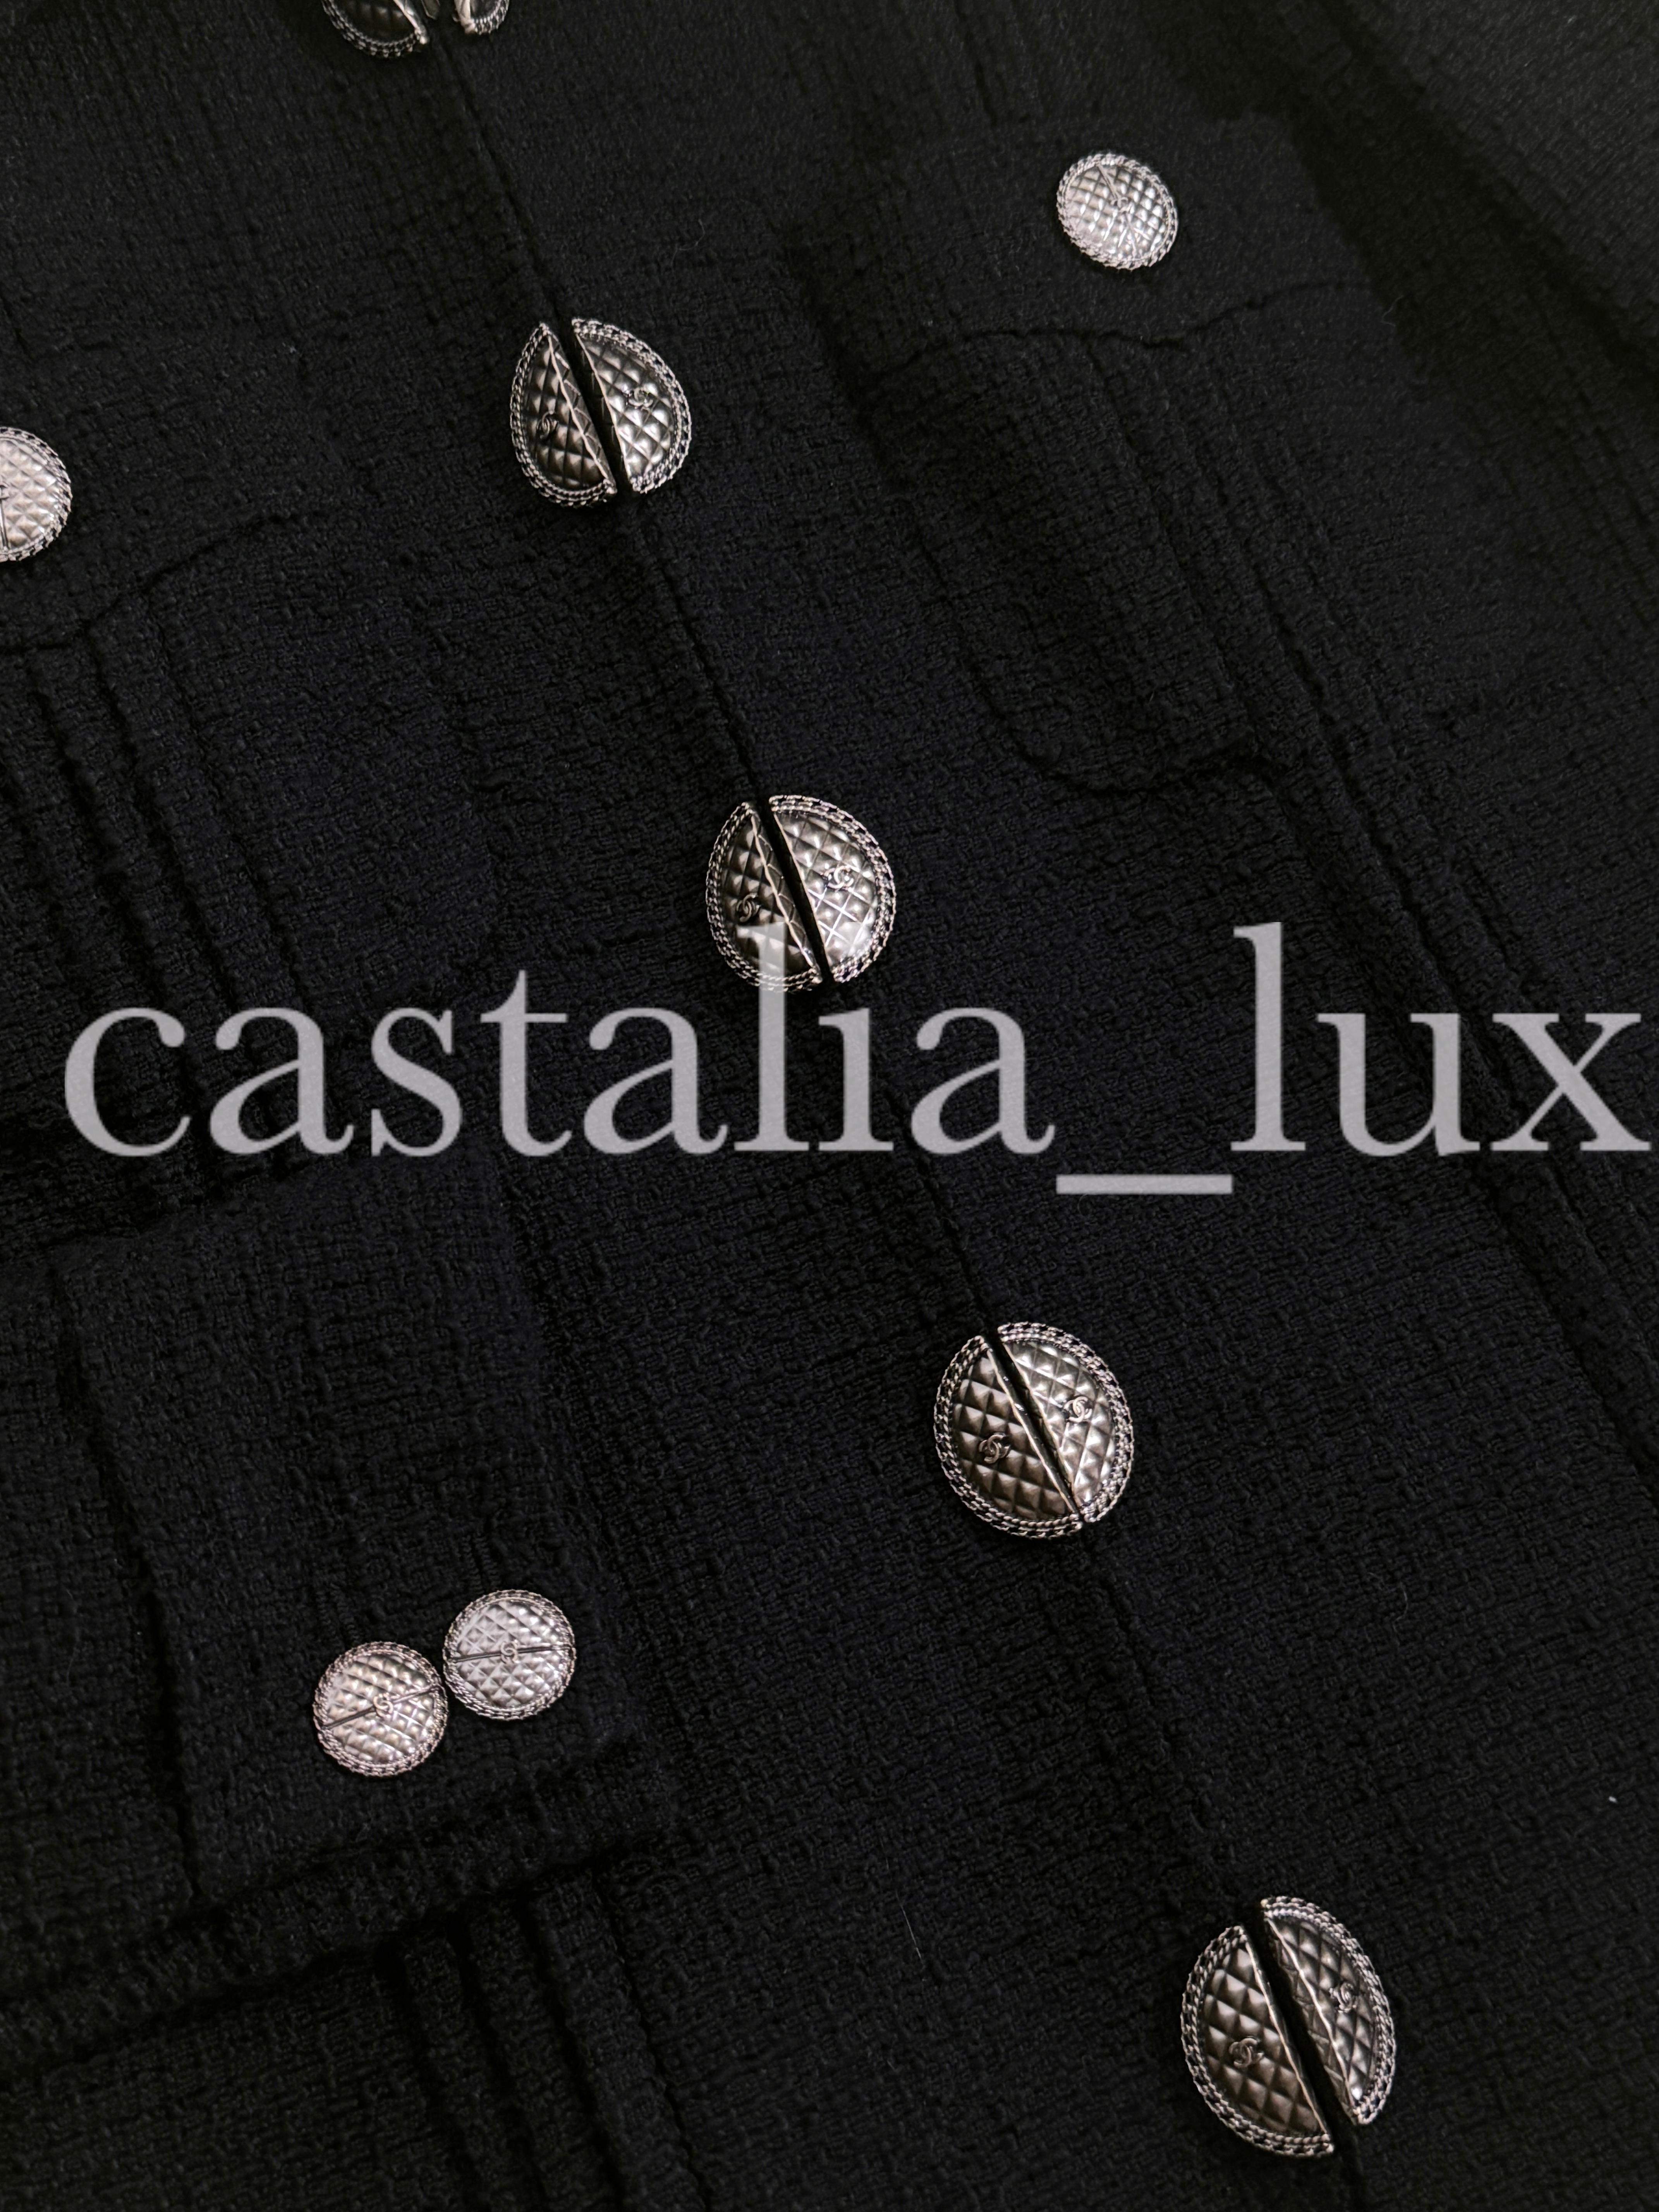 Zeitlose Chanel Jacke aus schwarzem Tweed in der Interpretation von Paris / CUBA Cruise Collection von Karl Lagerfeld, 2017 Cruise
Wie bei vielen Promis gesehen!
Größenbezeichnung 38 FR. Nie getragen
- Gesteppte Knöpfe mit CC-Logo
-